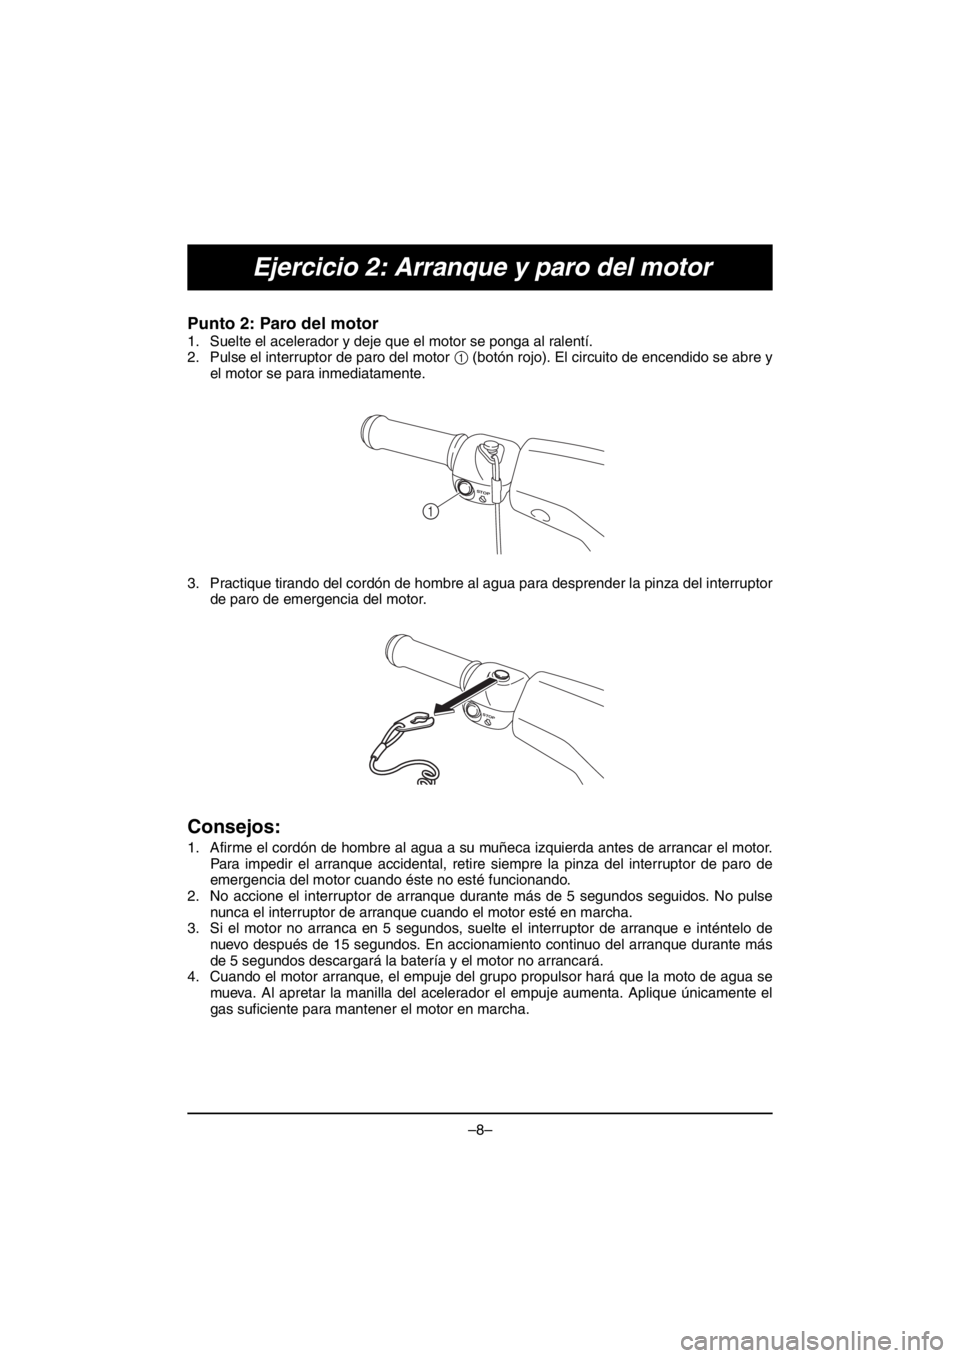 YAMAHA V1 2016  Manuale duso (in Italian) –8–
Ejercicio 2: Arranque y paro del motor
Punto 2: Paro del motor 
1. Suelte el acelerador y deje que el motor se ponga al ralentí. 
2. Pulse el interruptor de paro del motor 1 (botón rojo). El